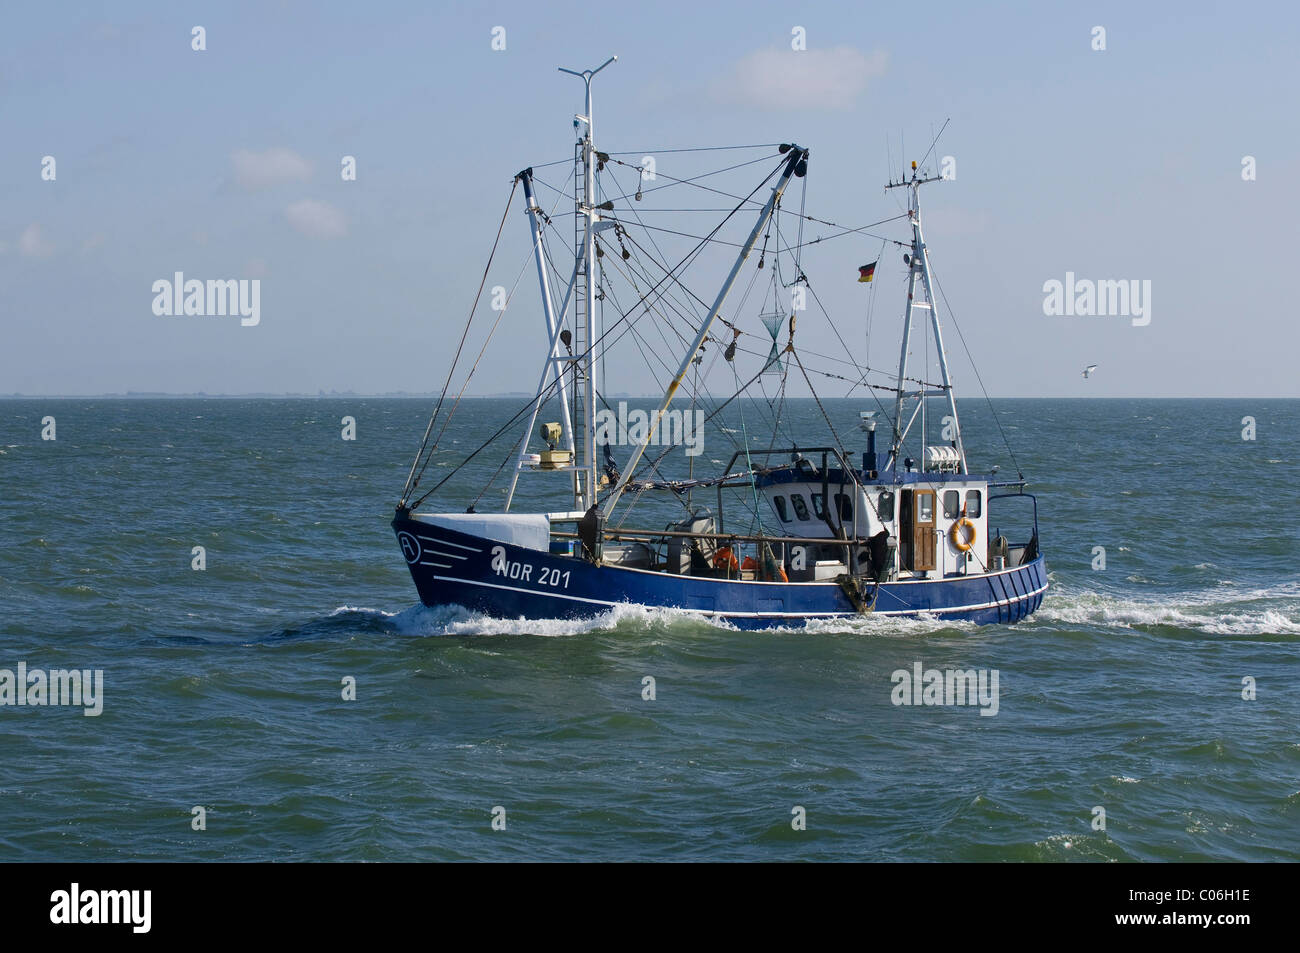 Crabcutter 201 ni en cours au large de Norddeich, Frise orientale, la mer des Wadden, classé au Patrimoine Mondial de l'UNESCO, Basse-Saxe, Allemagne, Europe Banque D'Images